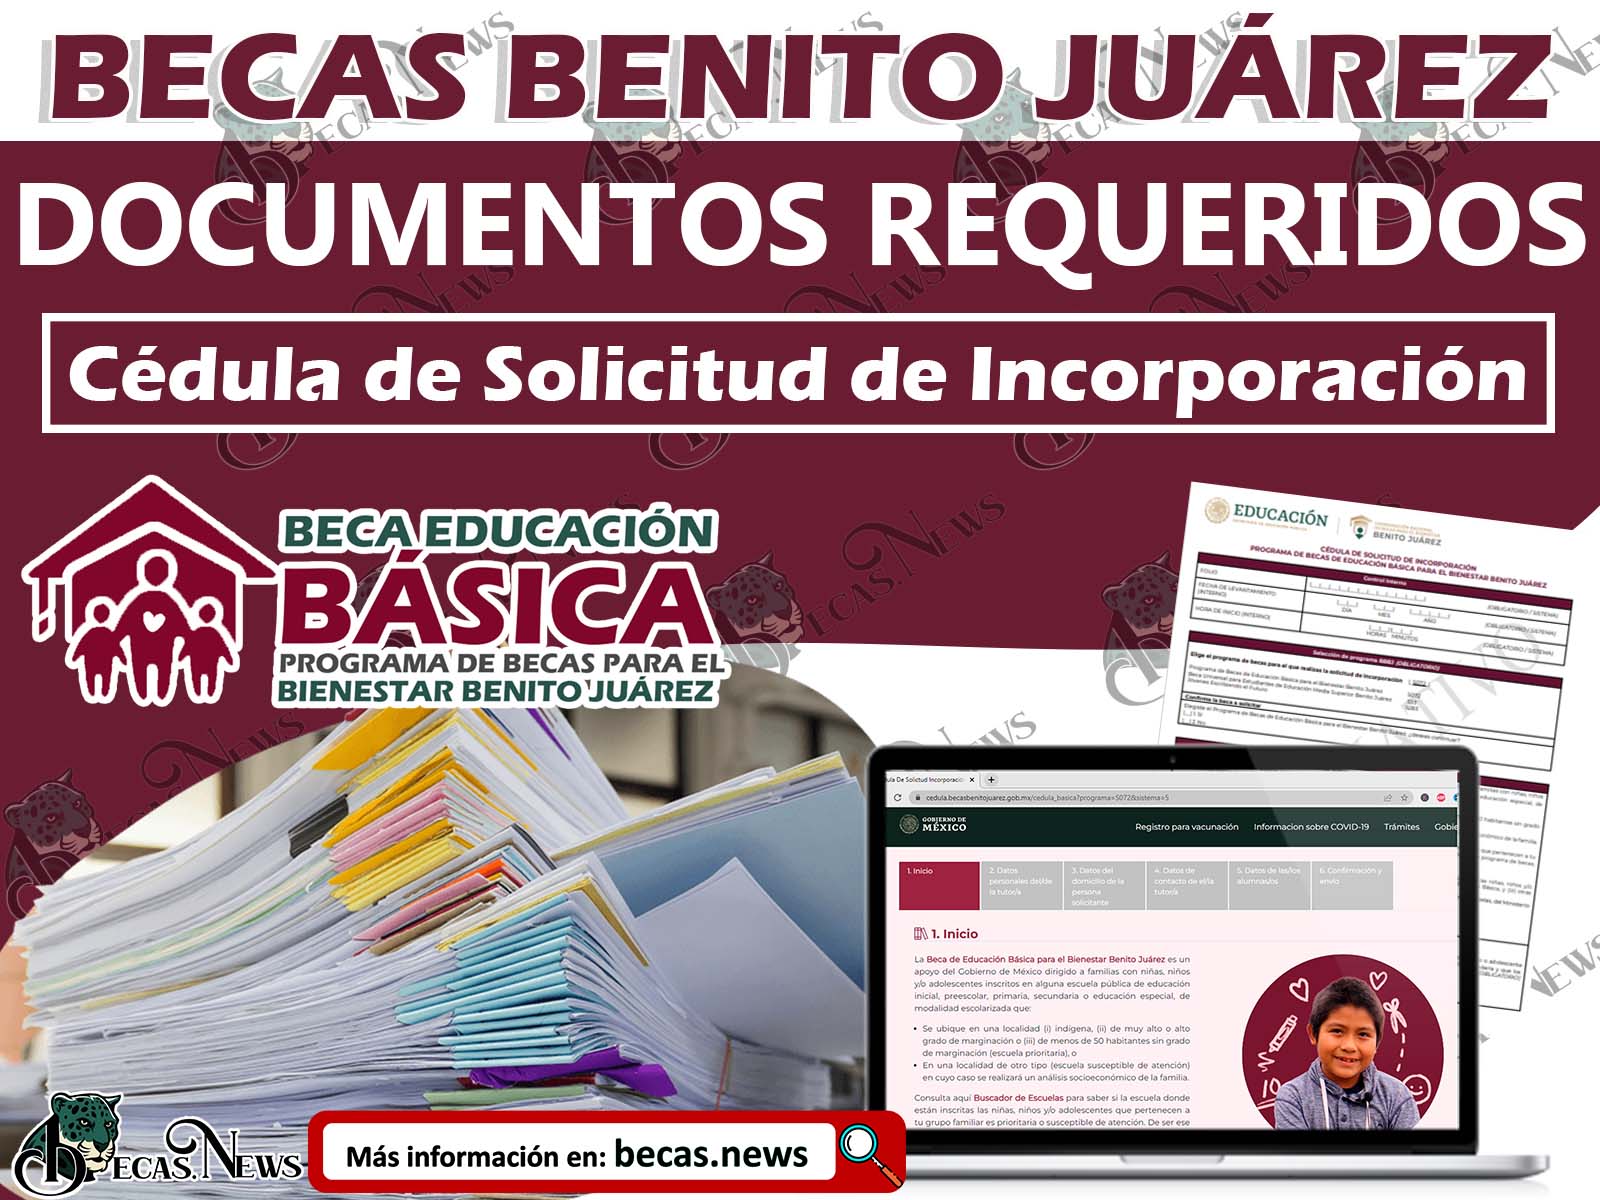 Estos son los Documentos requeridos para la Incorporación de Becas Benito Juárez